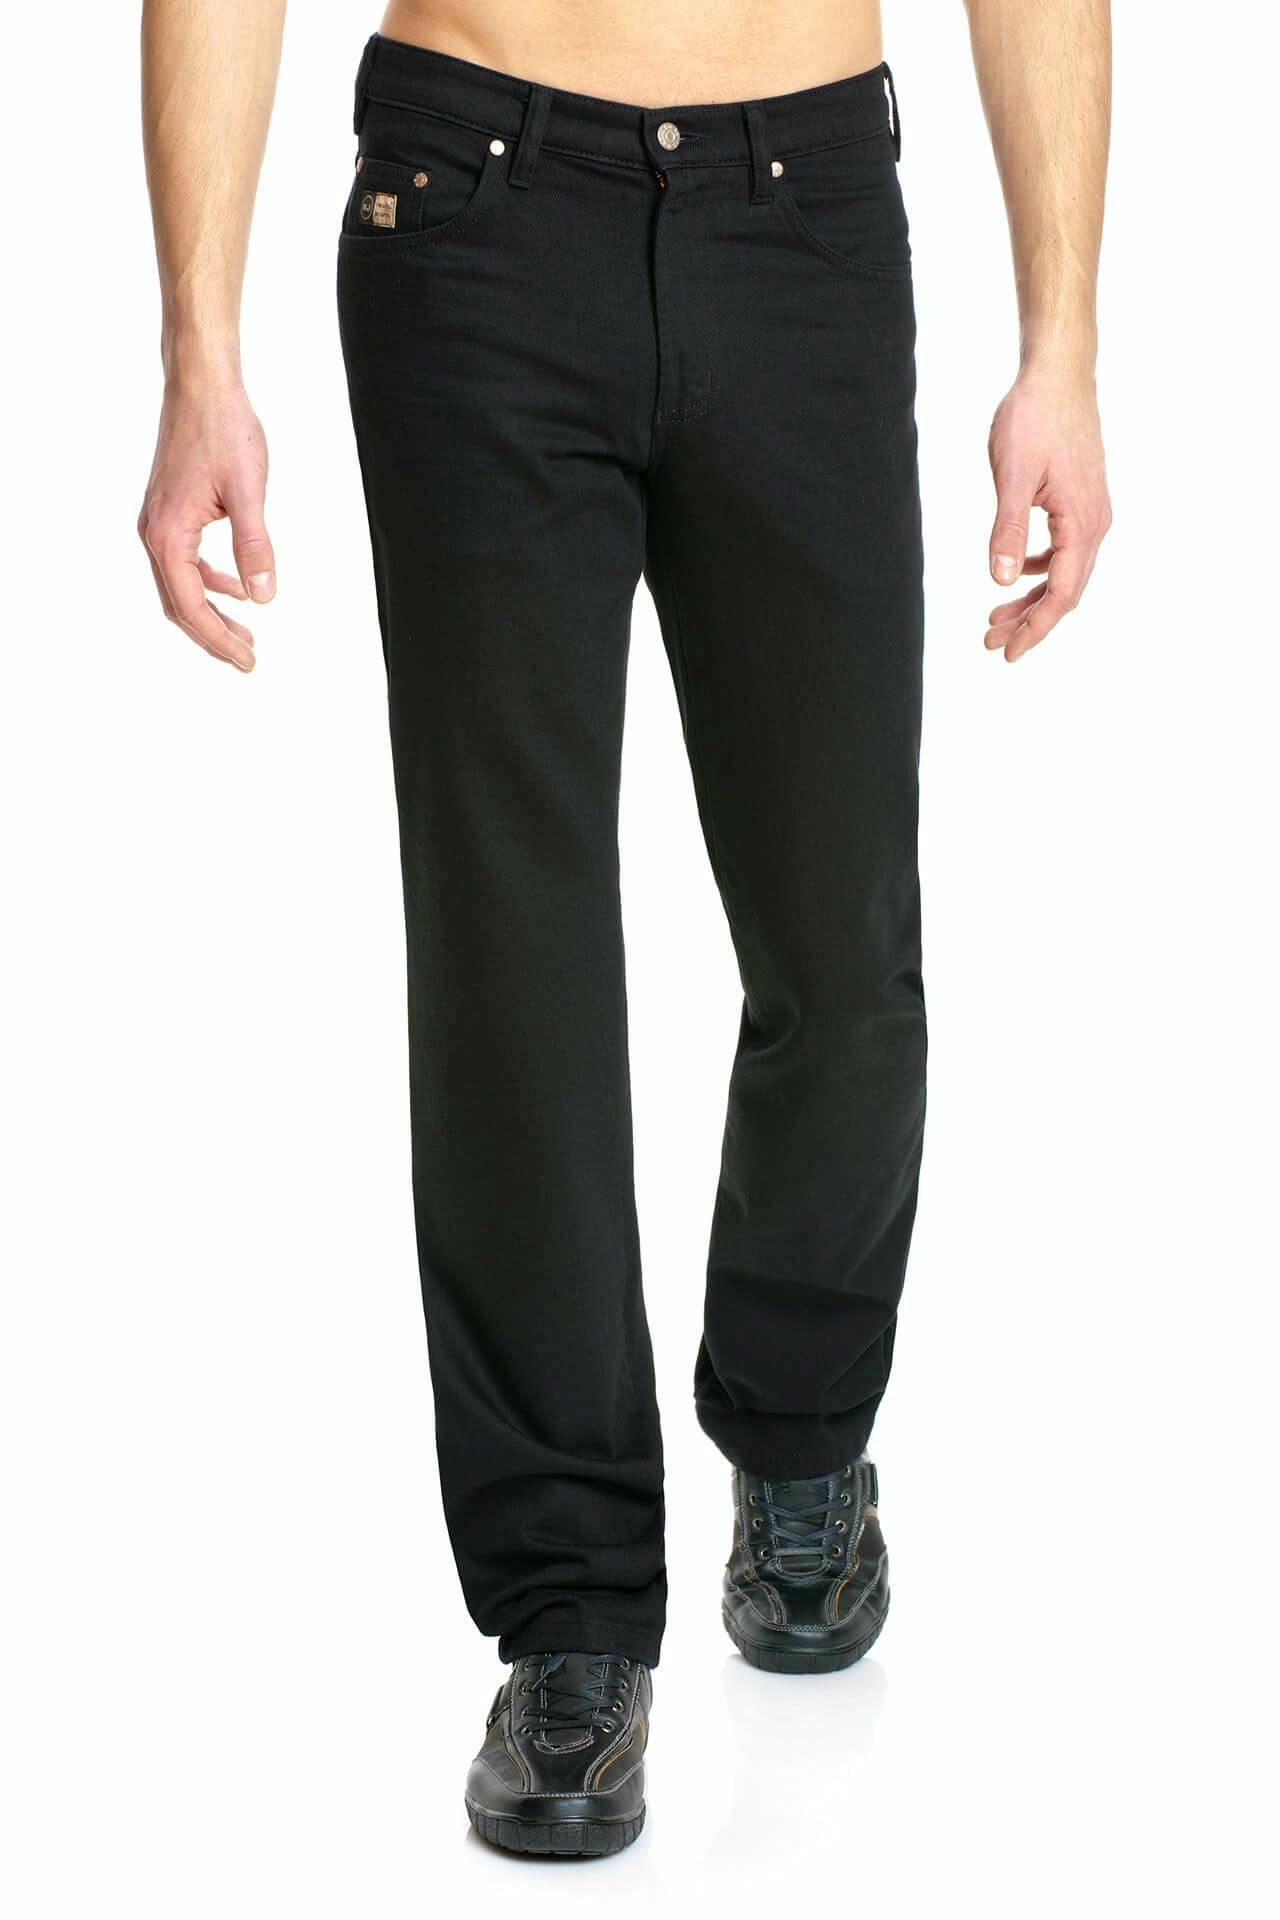 Artikel klicken und genauer betrachten! - Revils Jeans 302 Stretch in black Die Revils Jeans 302 überzeugt durch zeitloses, schlichtes Design. | im Online Shop kaufen